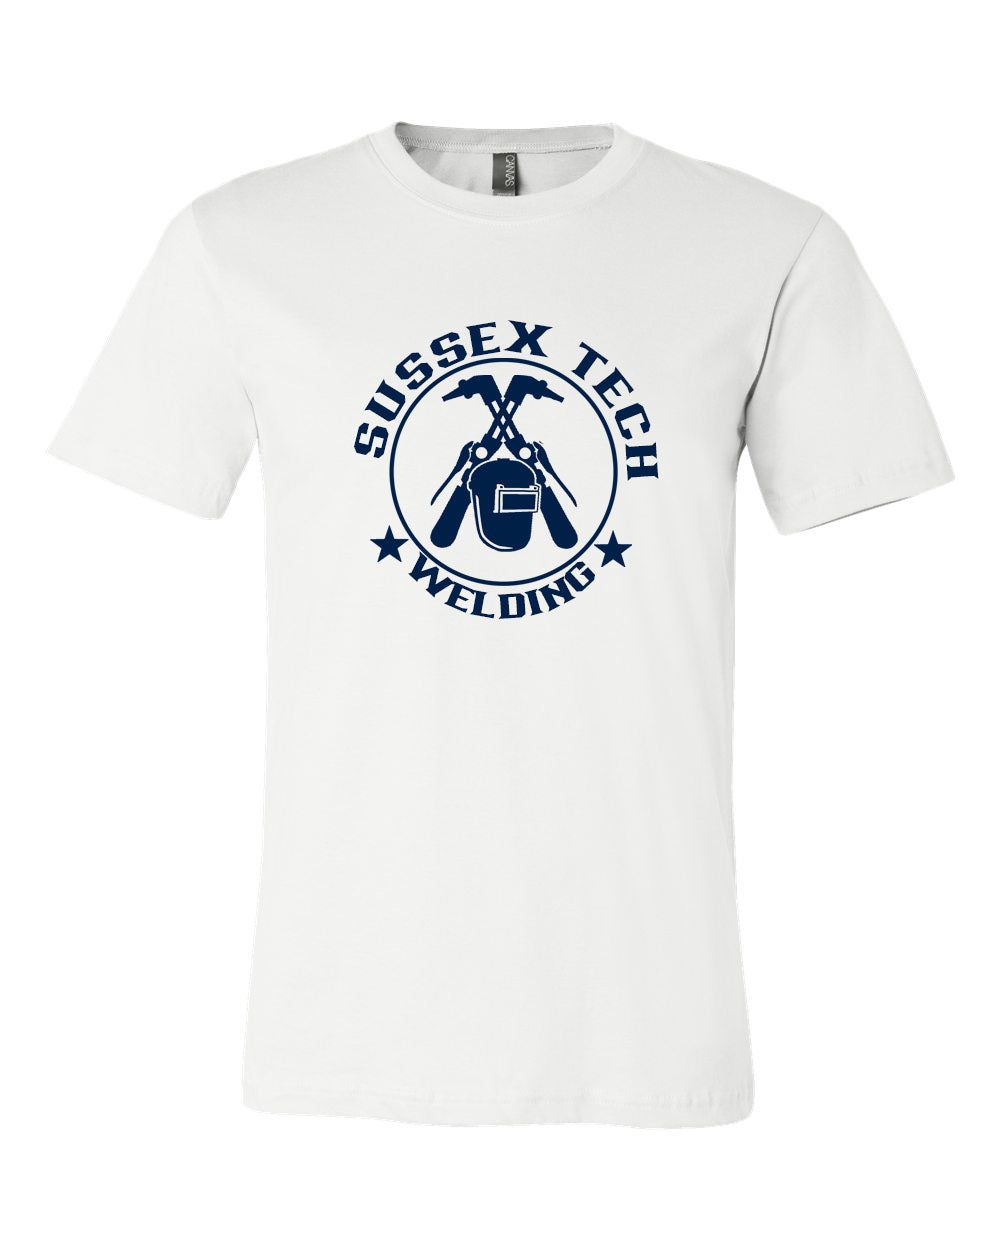 Sussex Tech Welding Design 6 T-Shirt